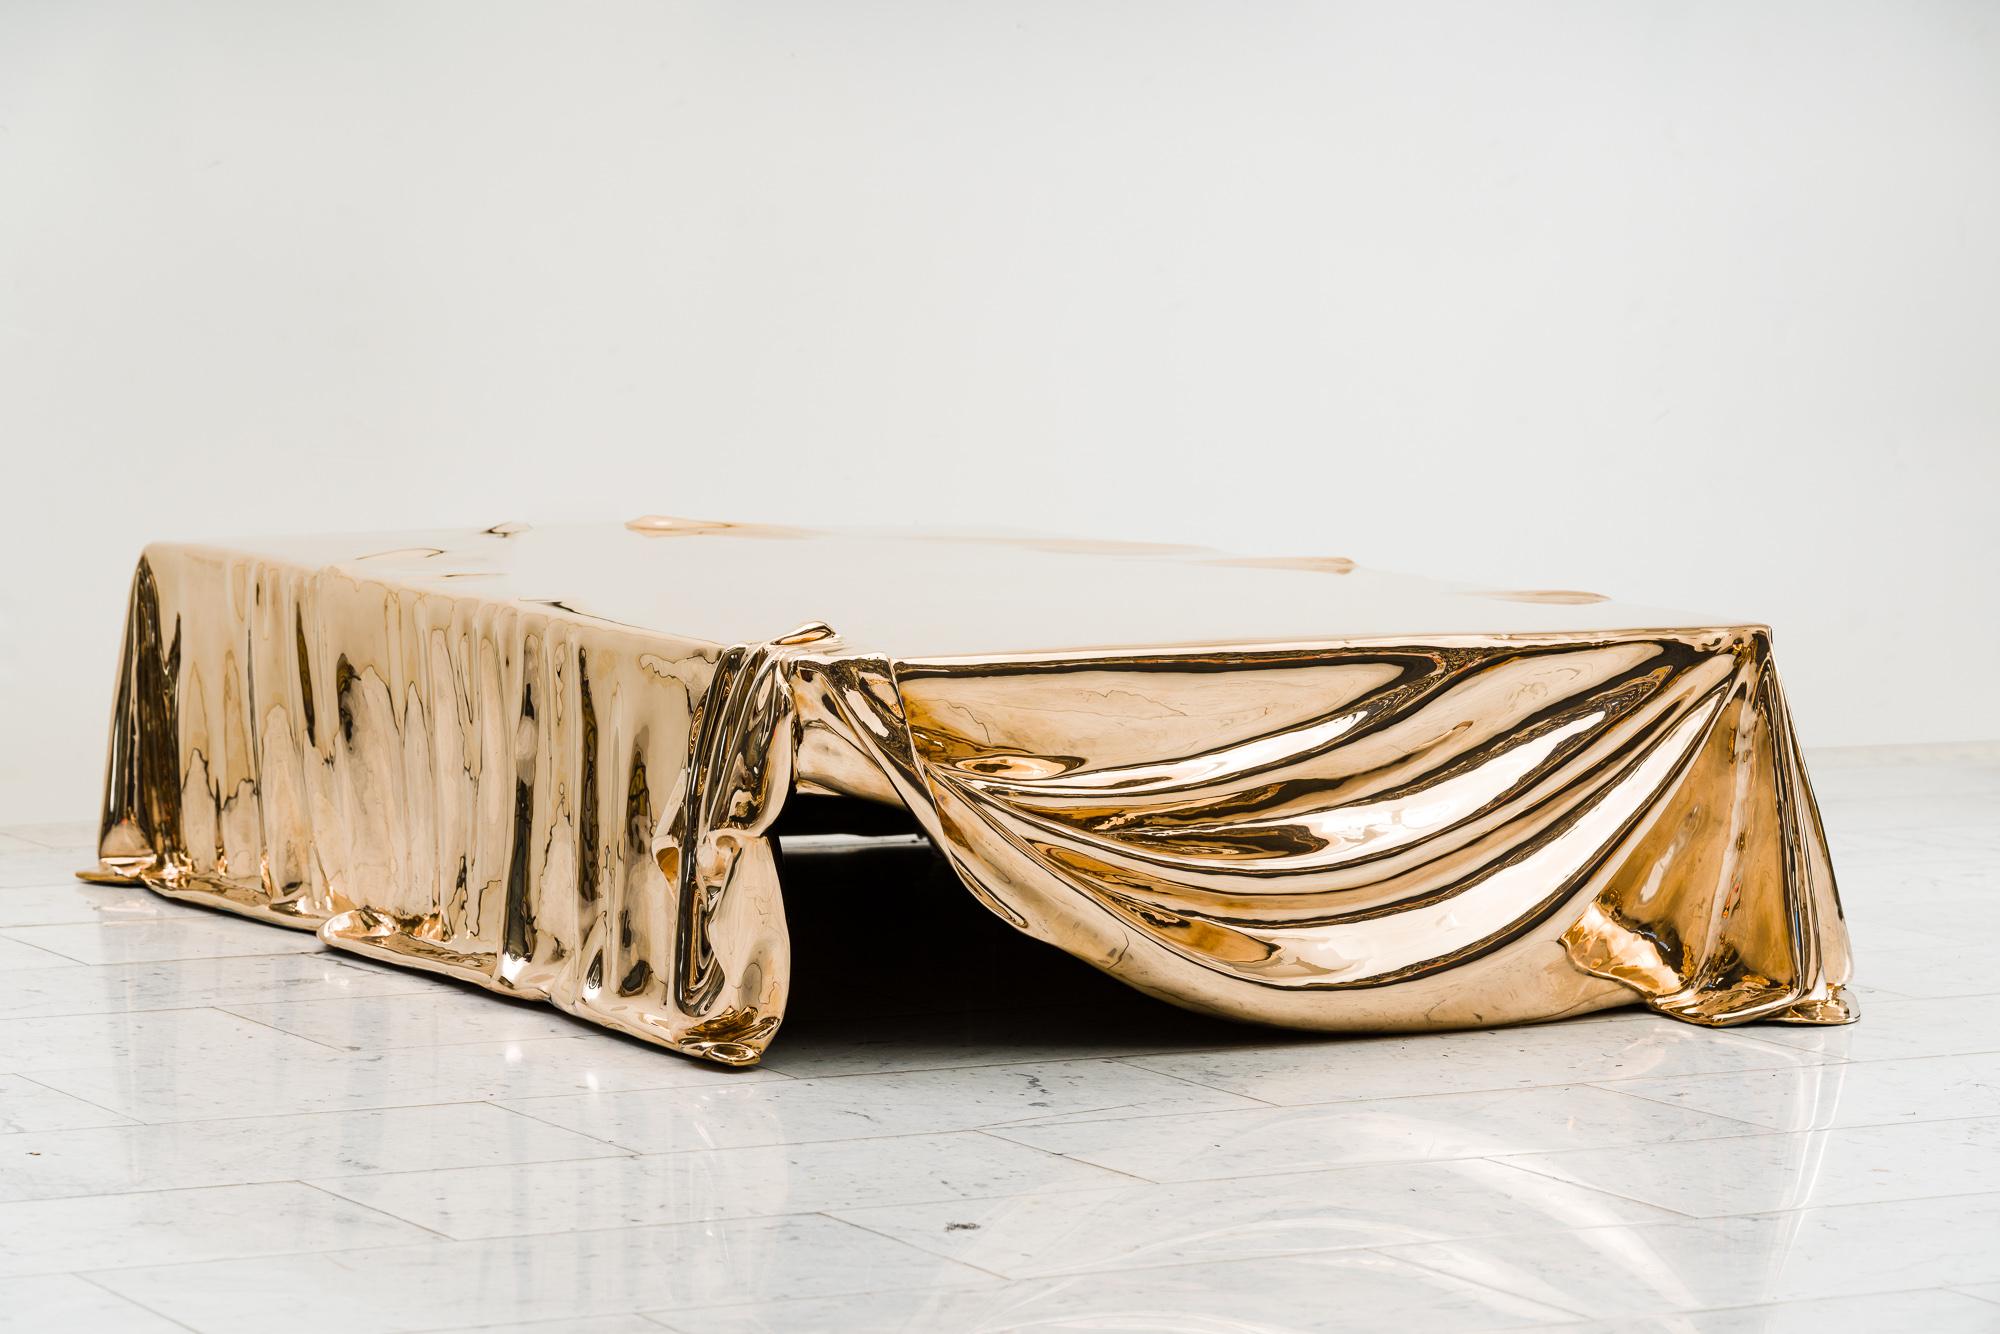 Émanant du cœur de l'éthique visionnaire de Katz Studio, cette table basse de la Collection SIAL rend hommage à l'héritage du studio, qui allie la profondeur conceptuelle à la maîtrise des matériaux. Coulée dans l'élégance intemporelle du bronze, la